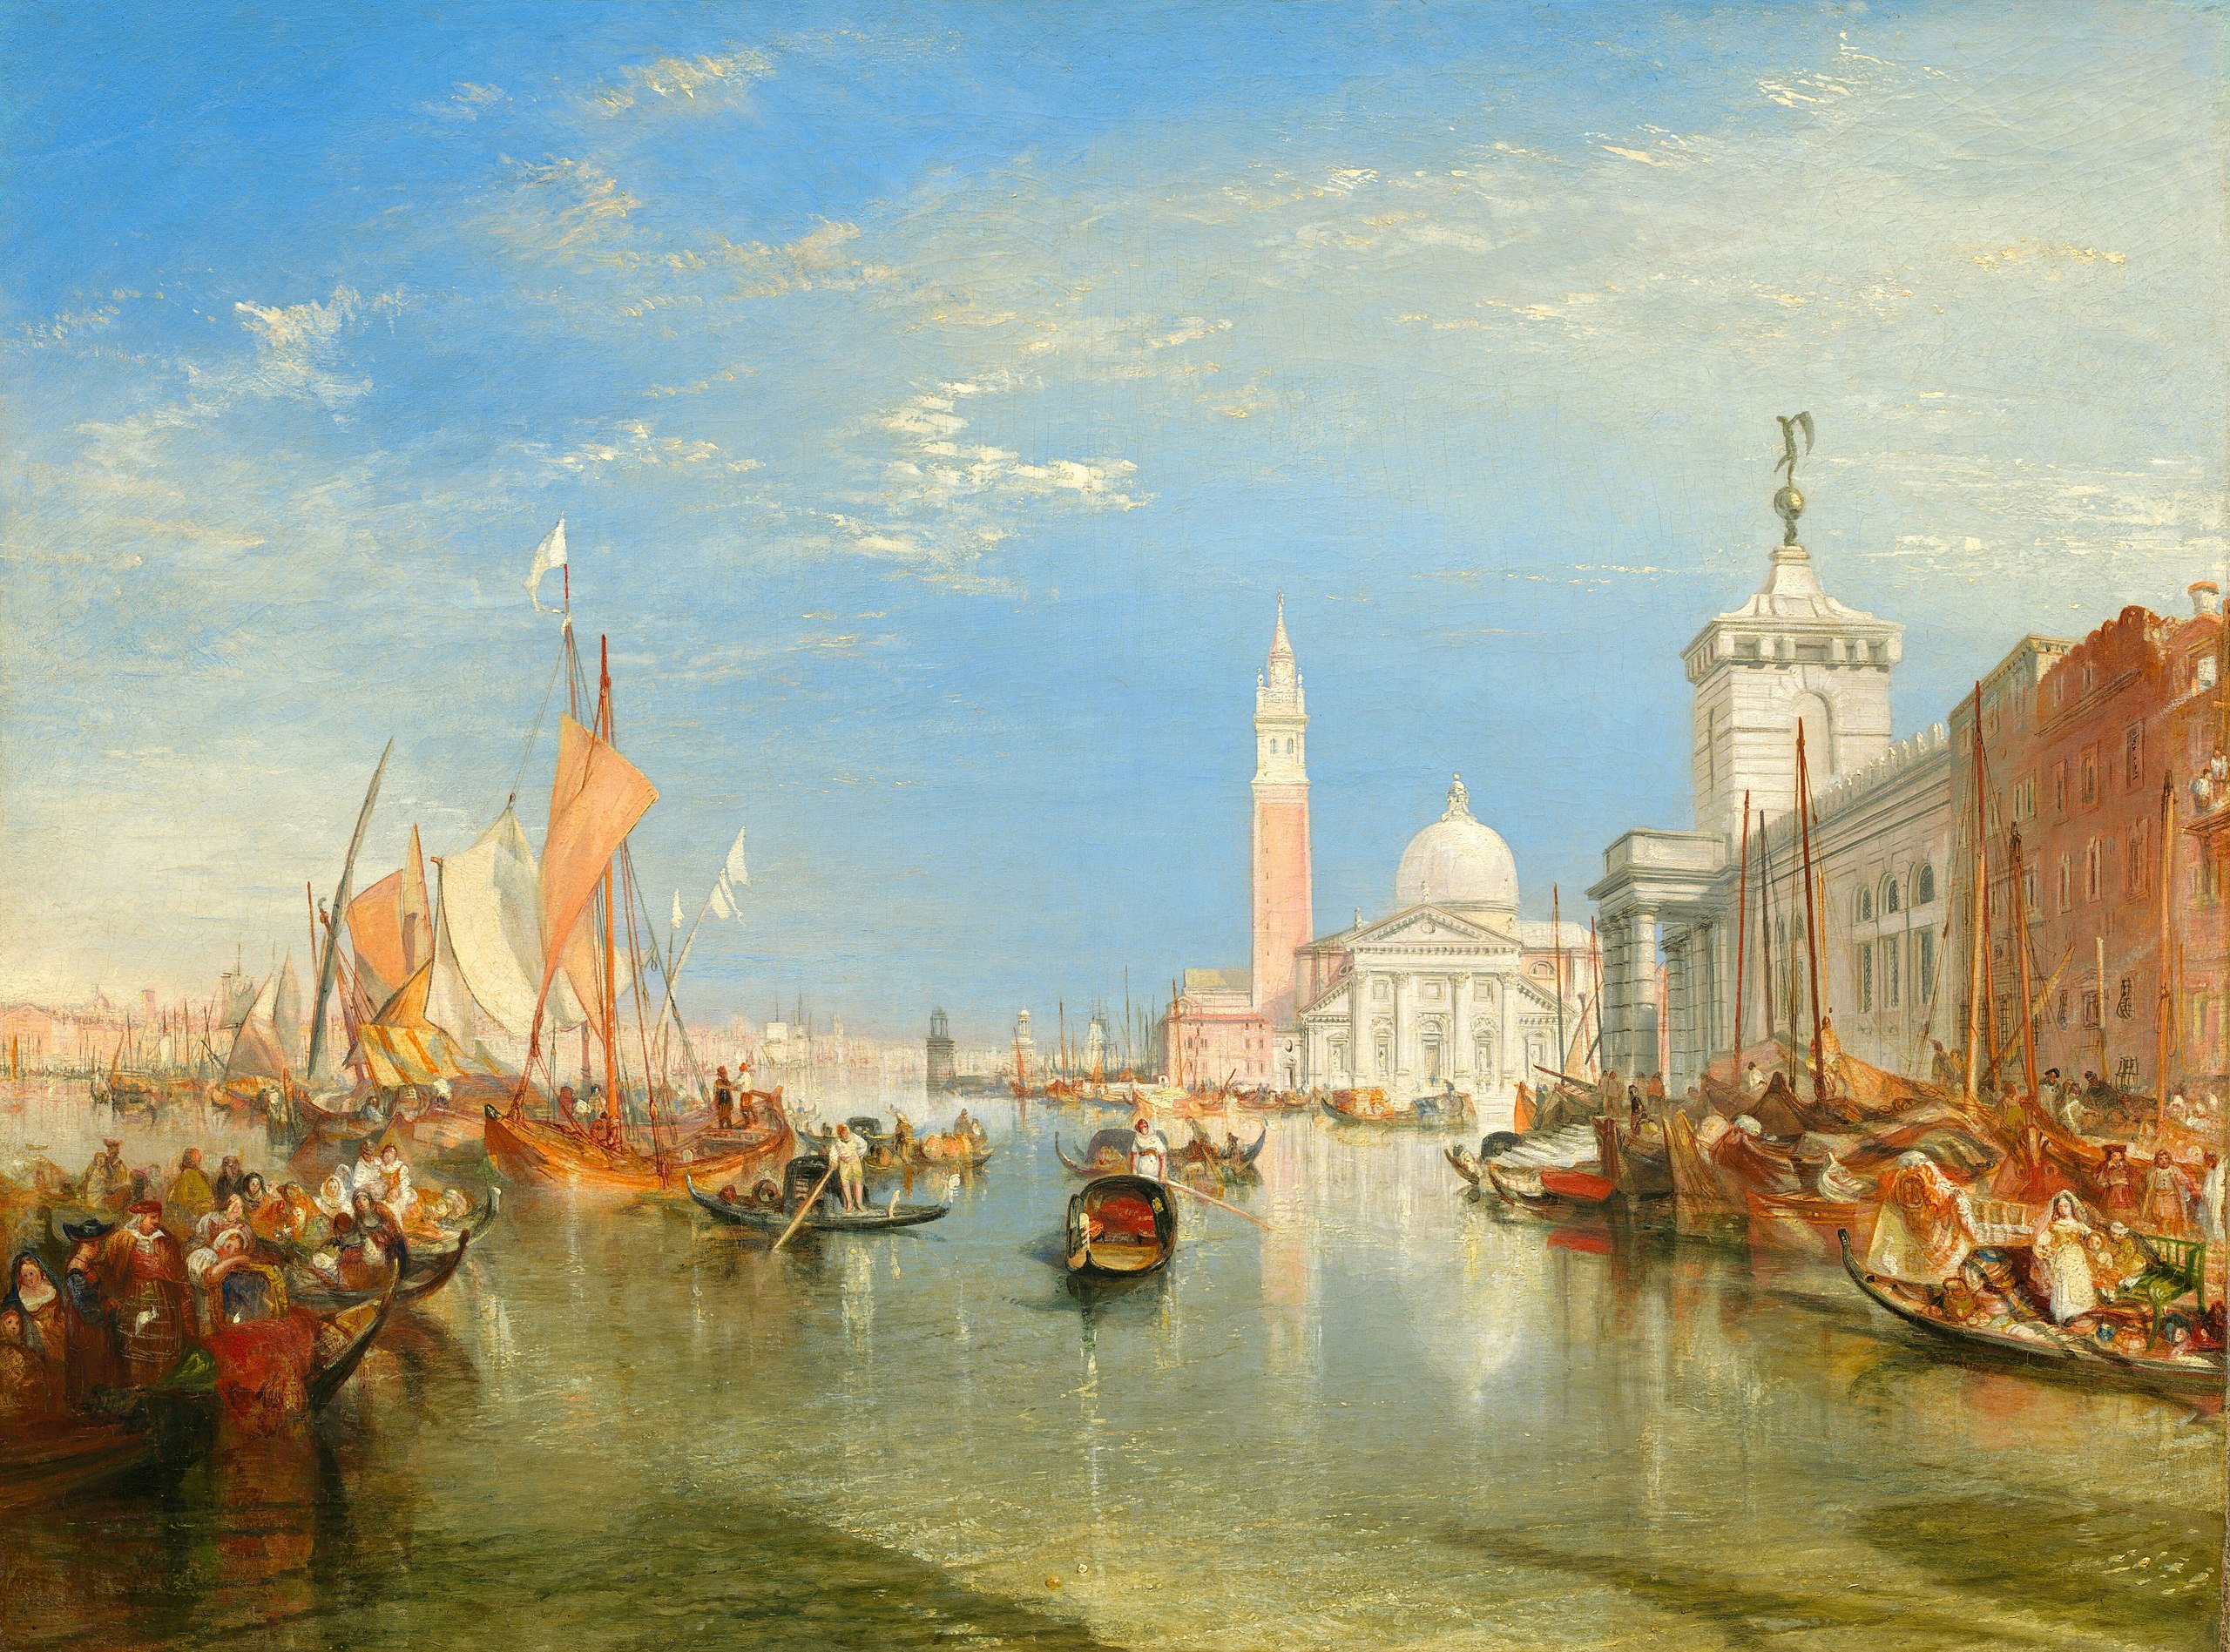 Benátky: Dogana a San Giorgio Maggiore by Joseph Mallord William Turner - 1834 - 91,5 x 122 cm 